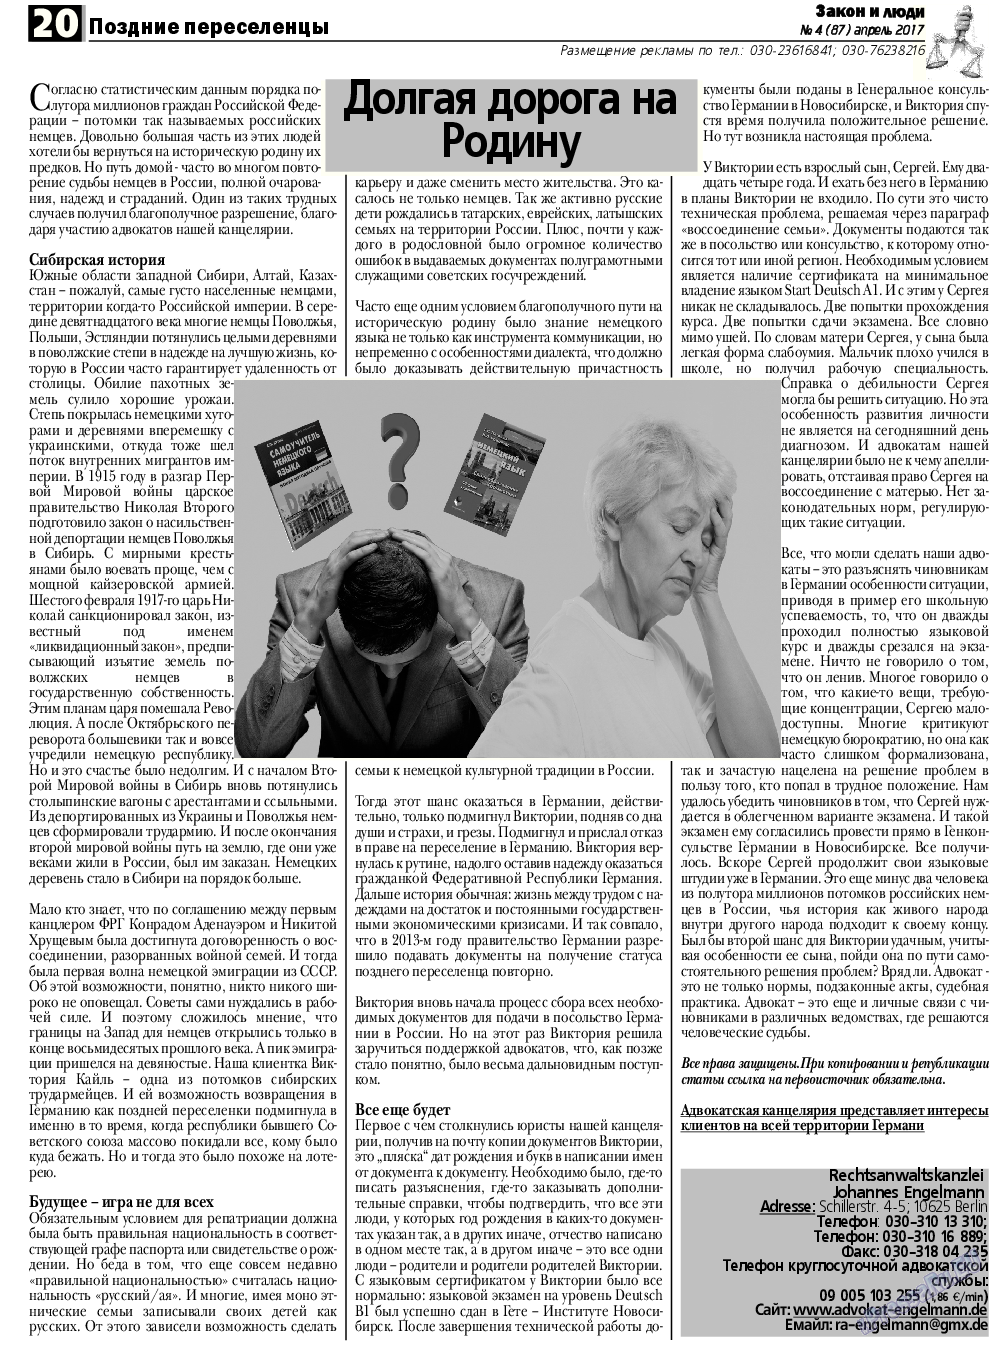 Закон и люди, газета. 2017 №4 стр.20